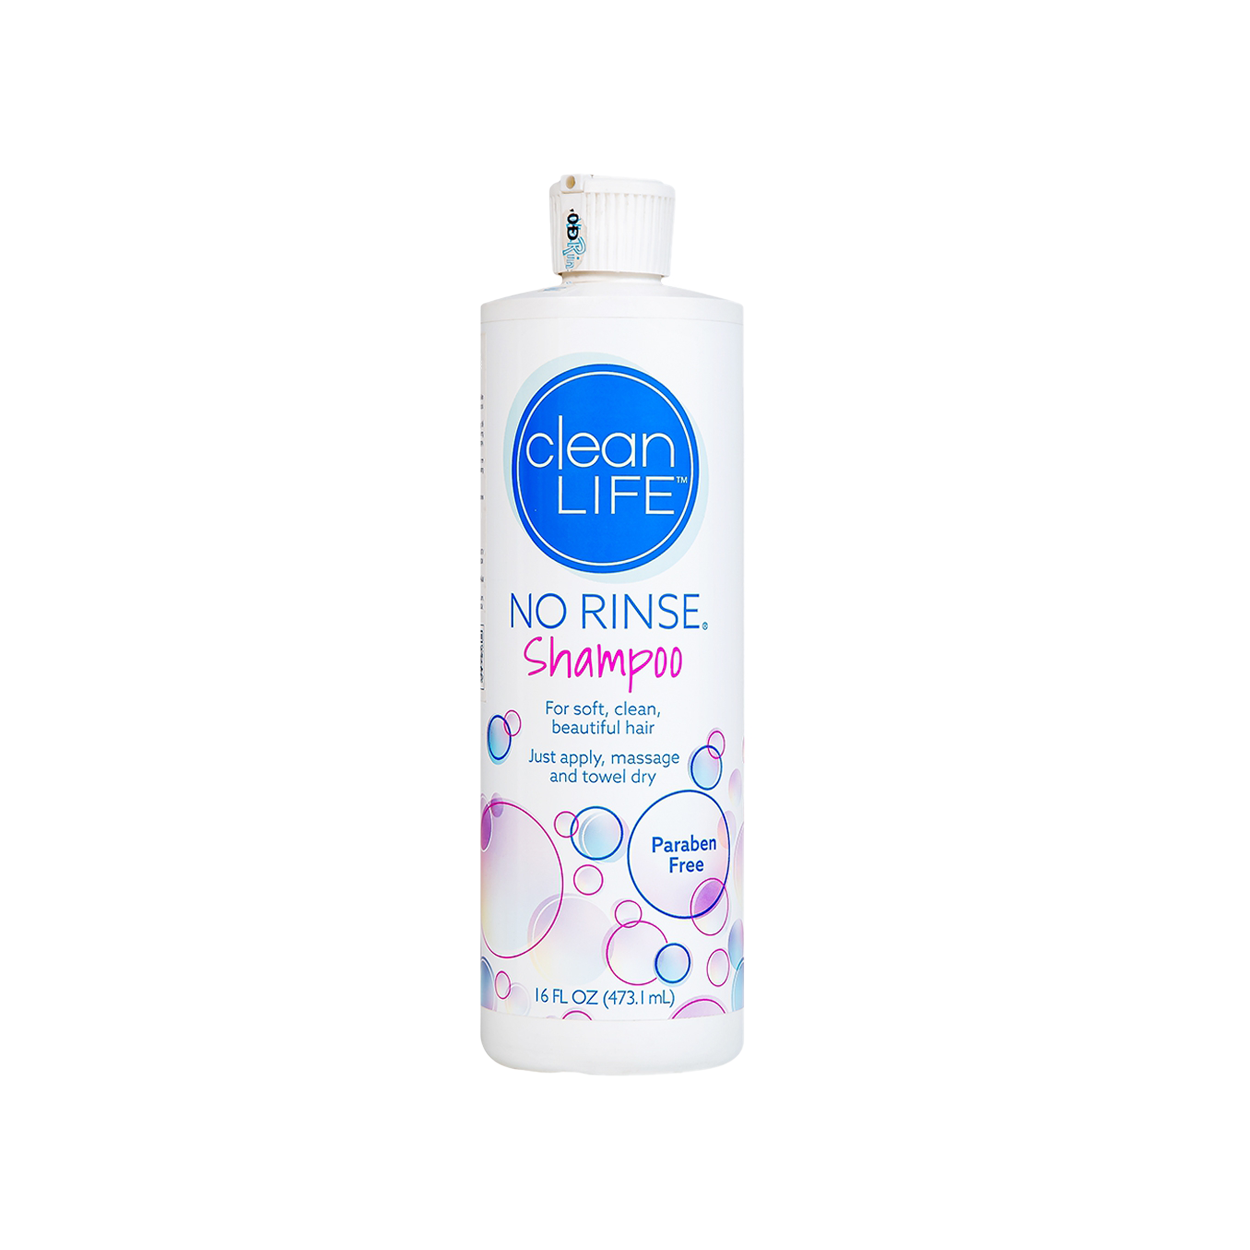 Dầu gội khô cleanLIFE No Rinse Shampoo